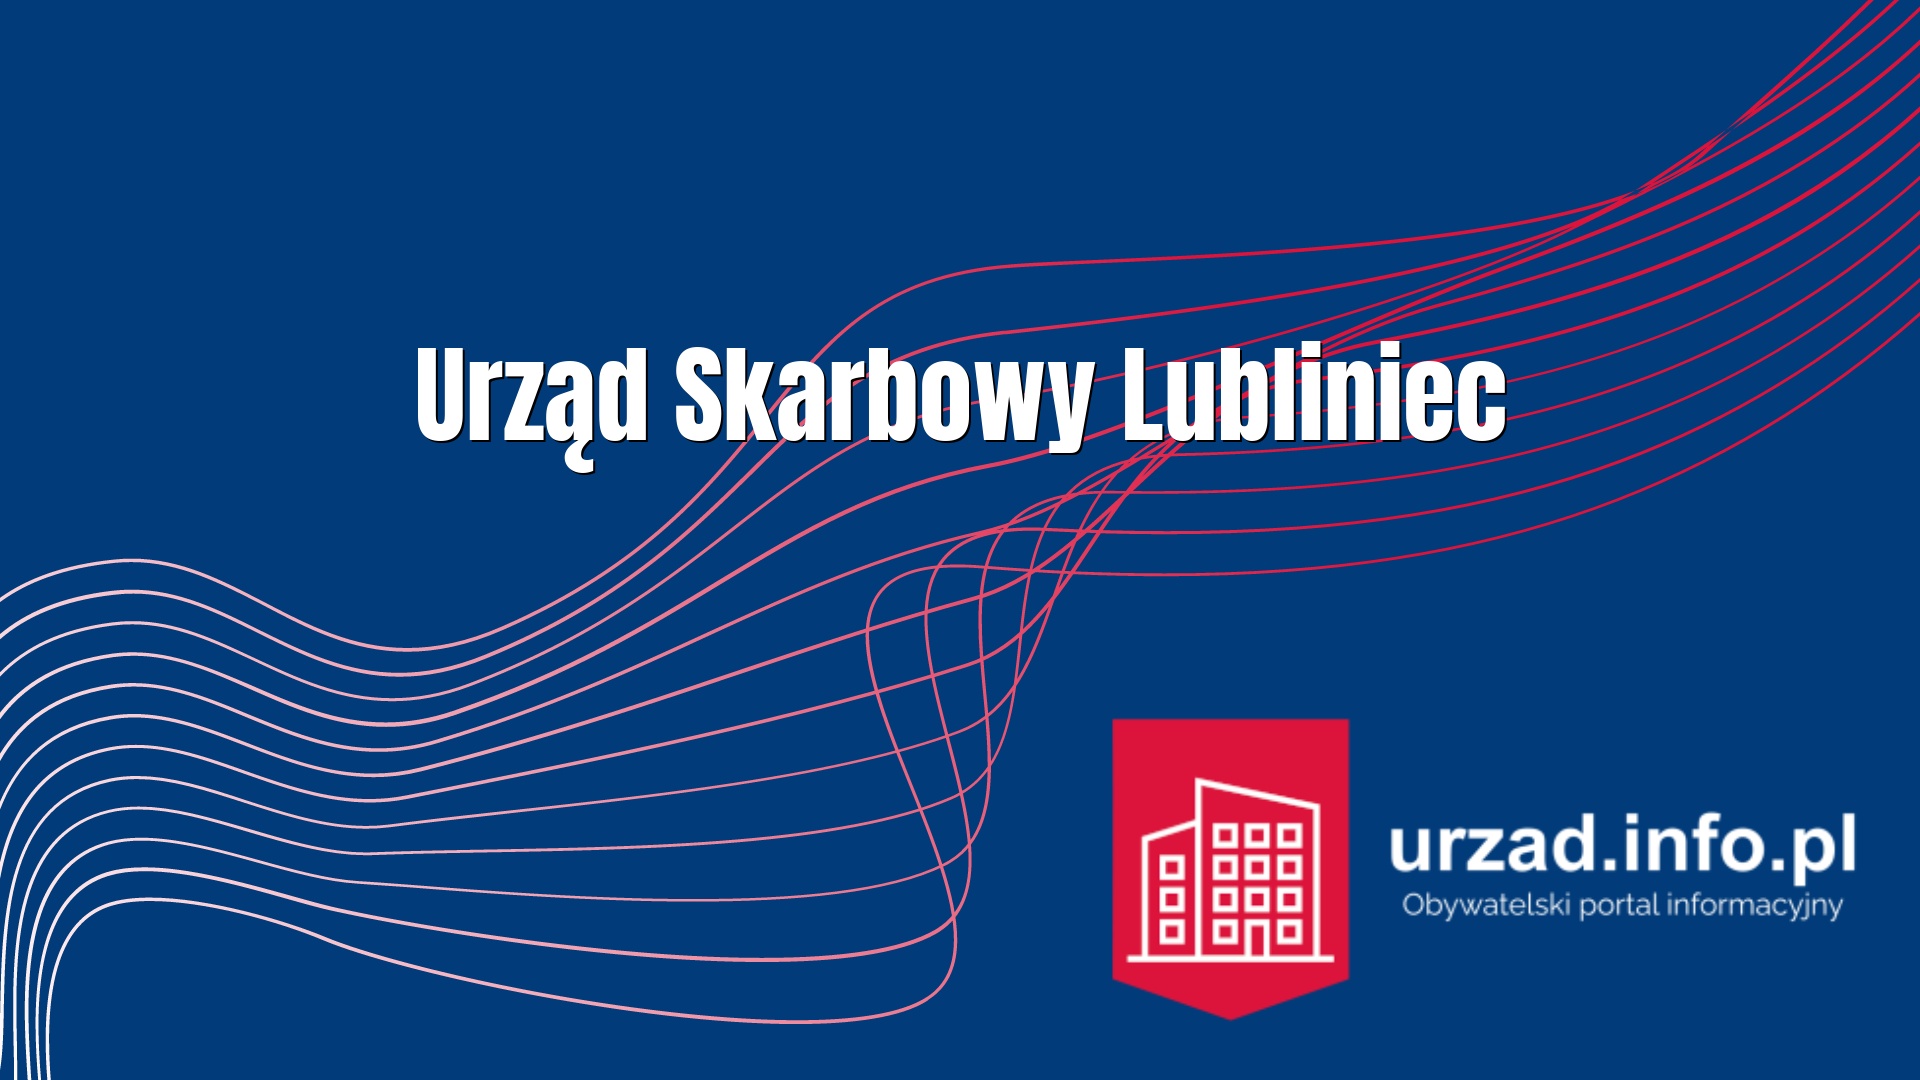 Urząd Skarbowy Lubliniec